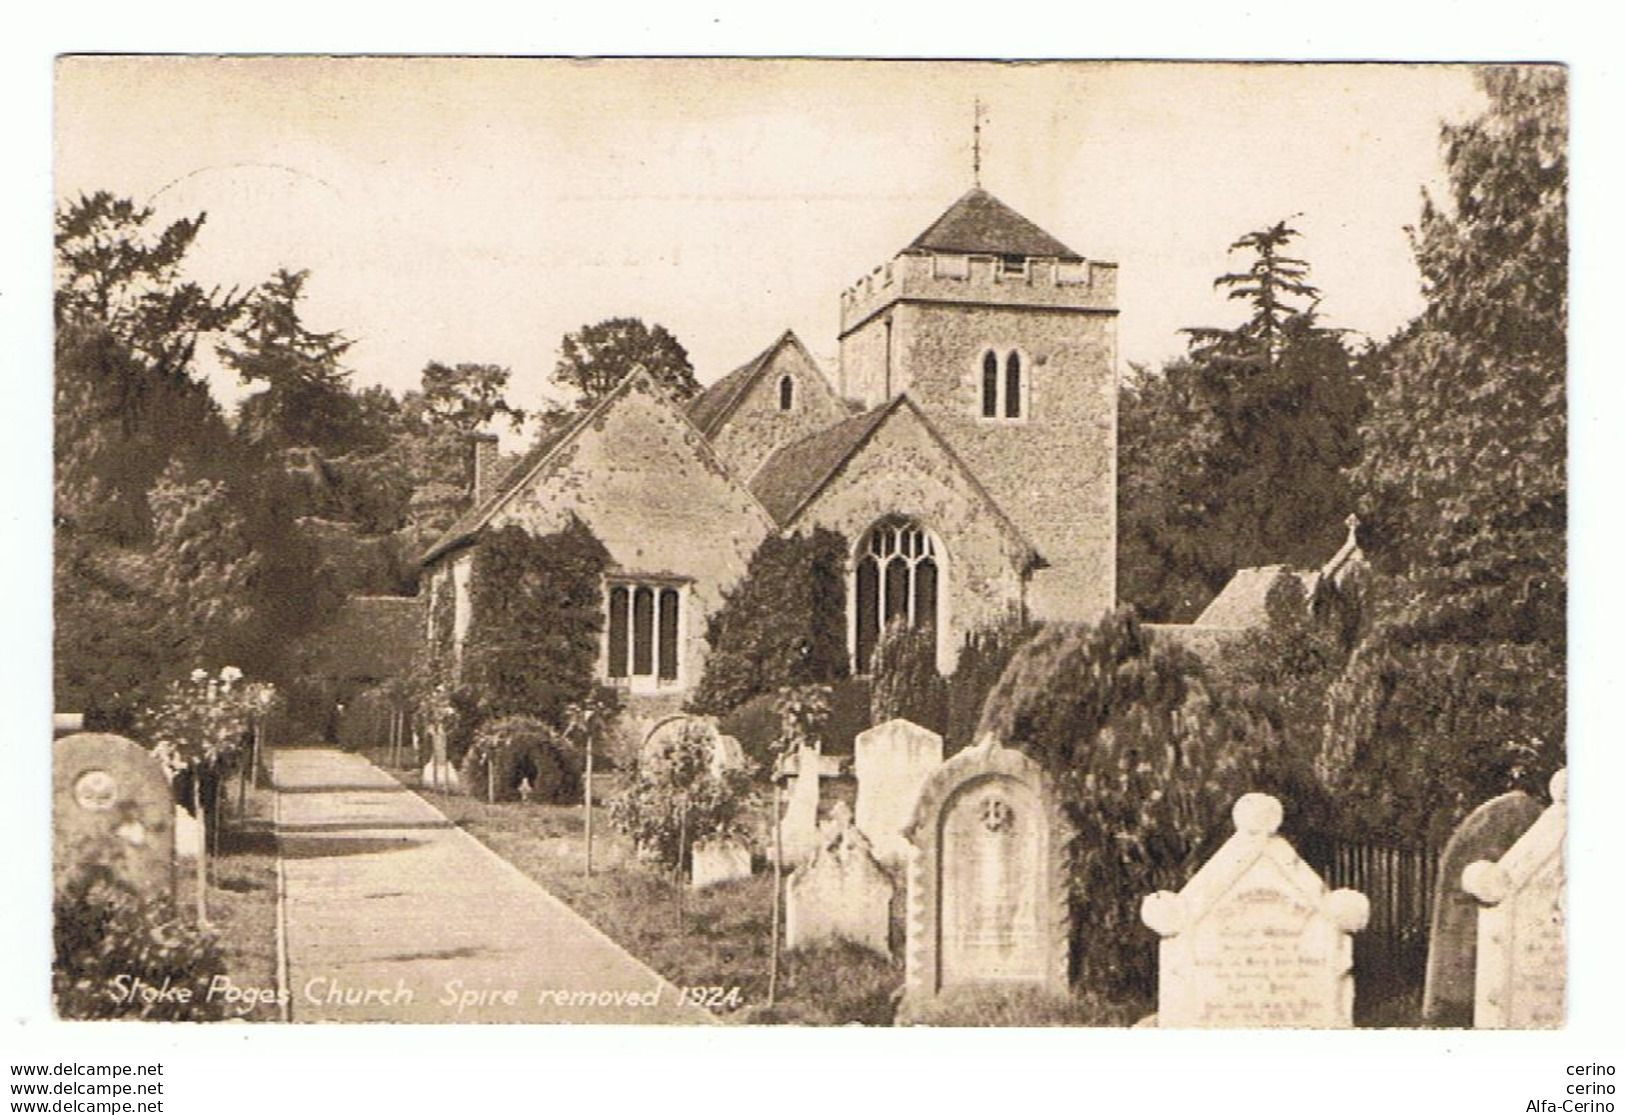 STOKE:  POGES  CHURCH  -  SPIRE  REMOVED  1924  -  FP - Stoke-on-Trent